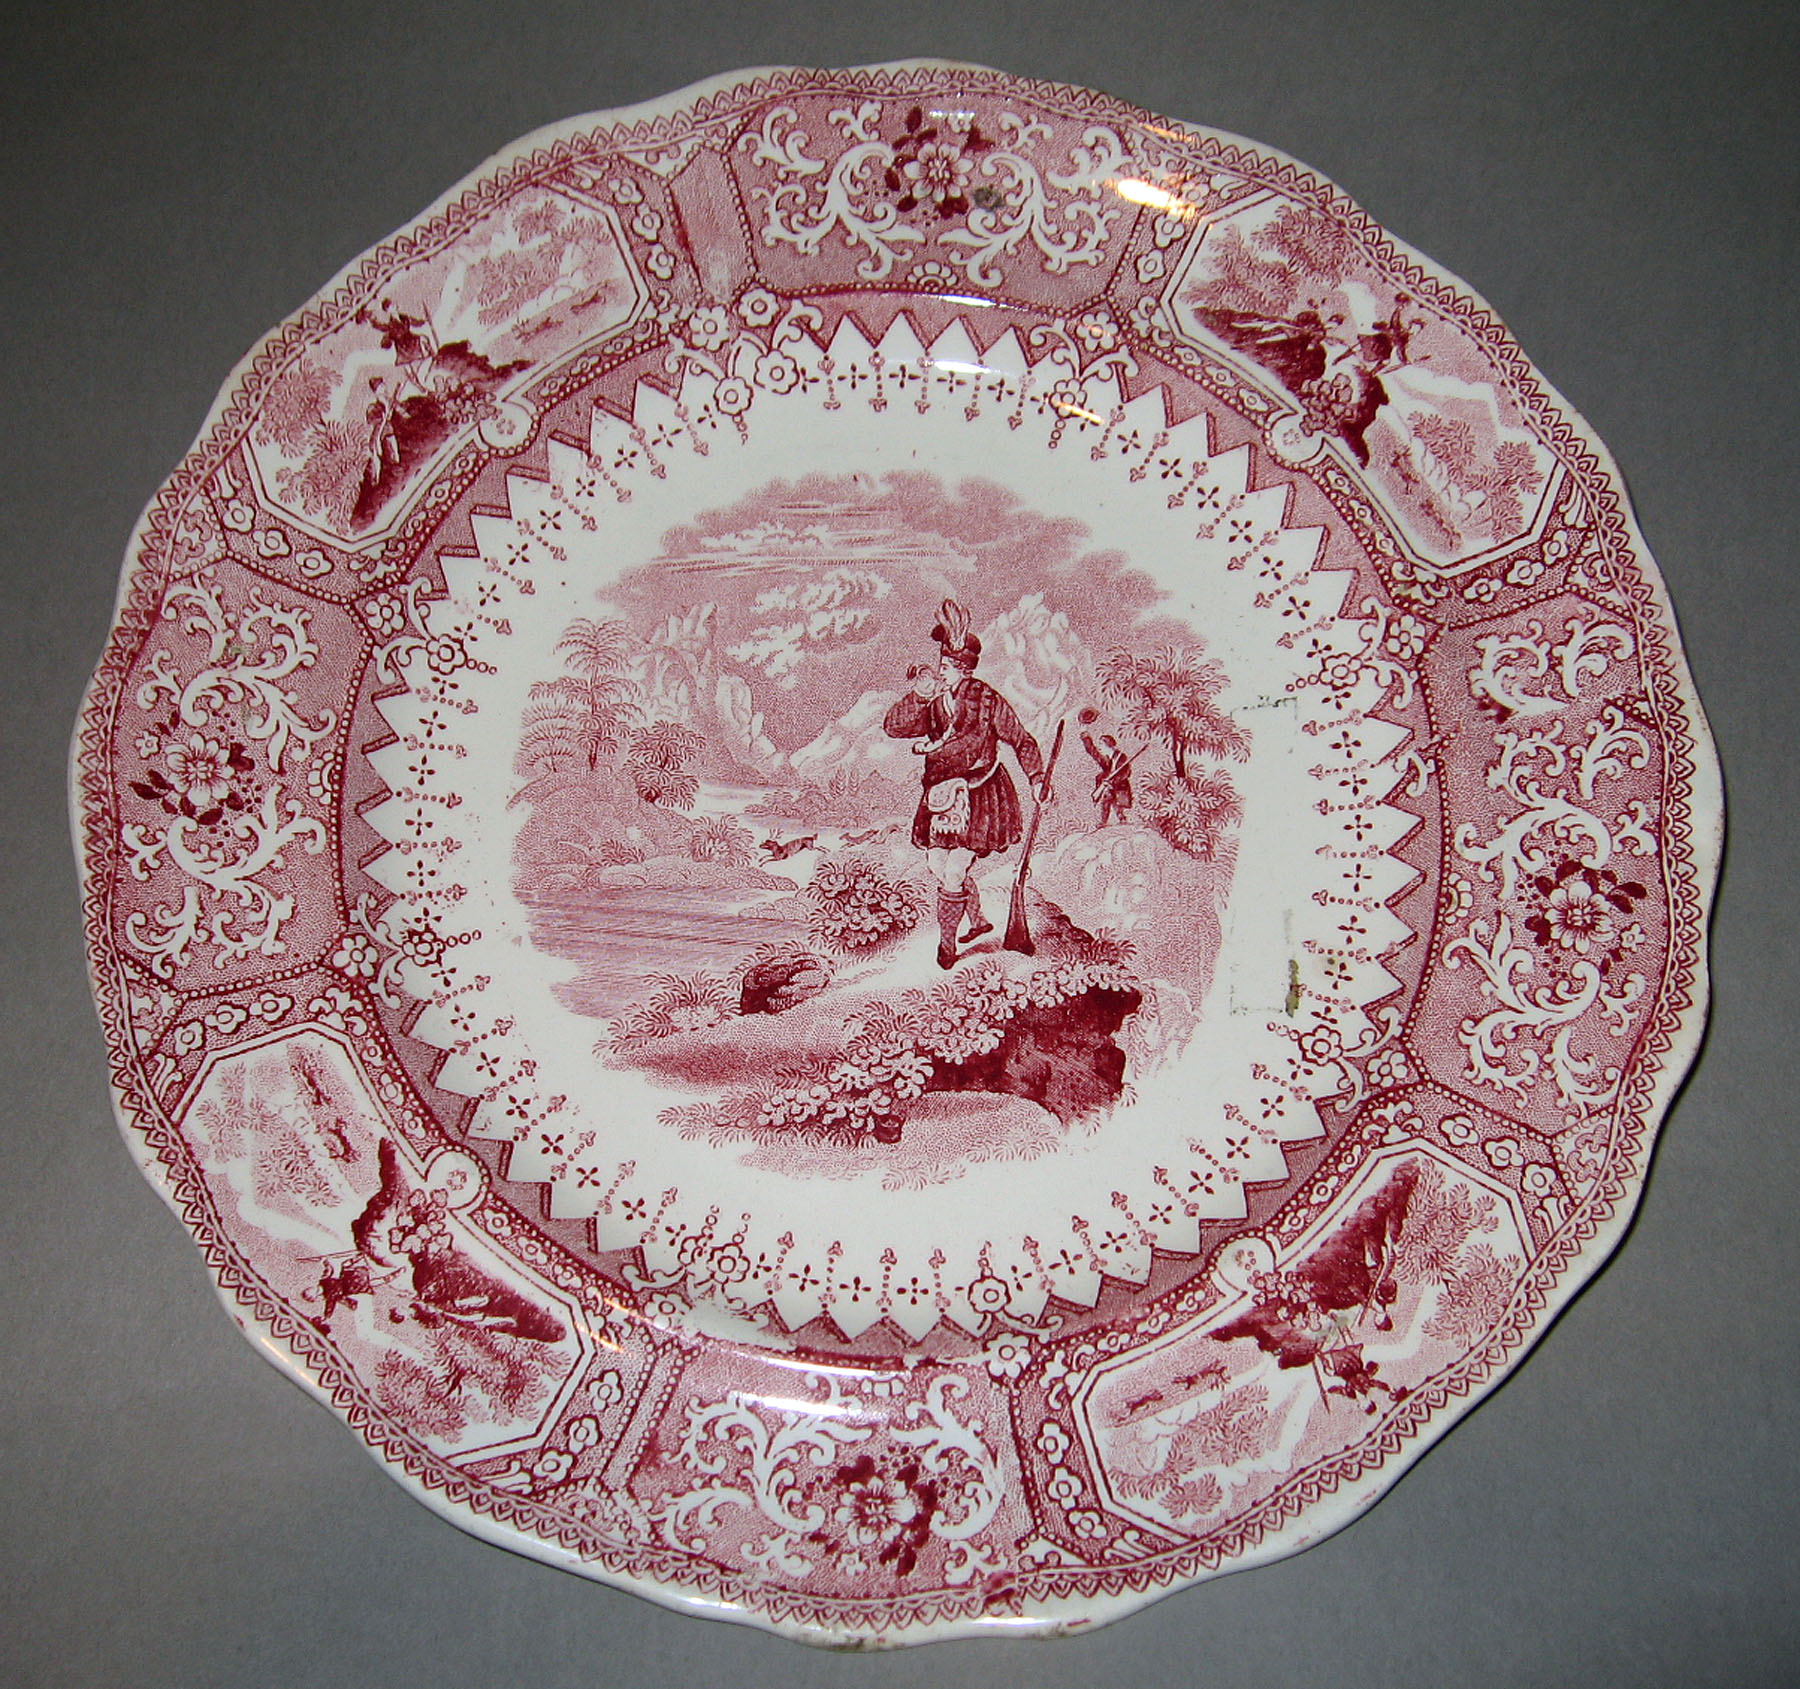 1961.0440.002 Adams Earthenware plate